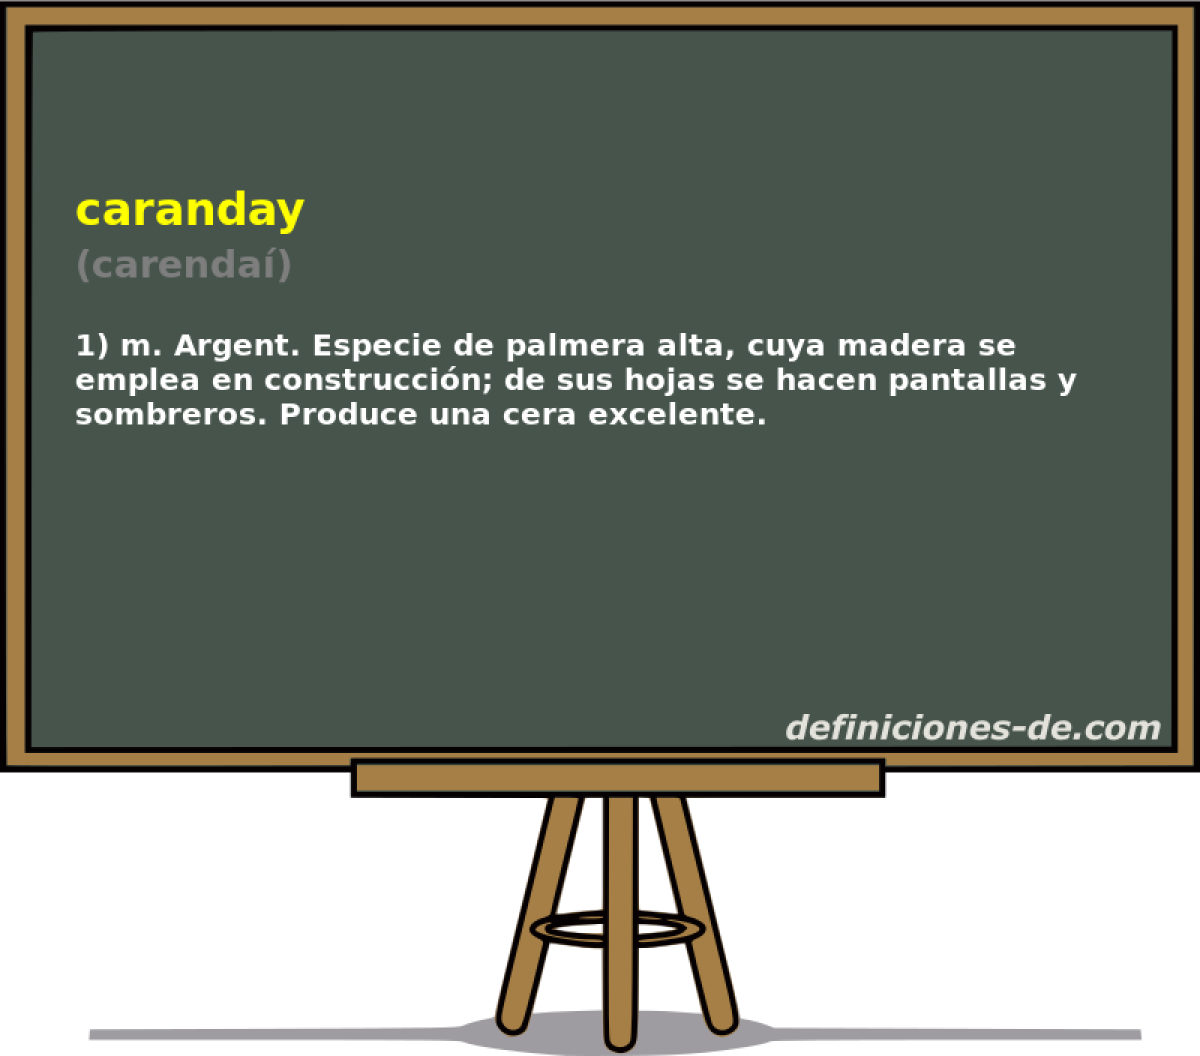 caranday (carenda)